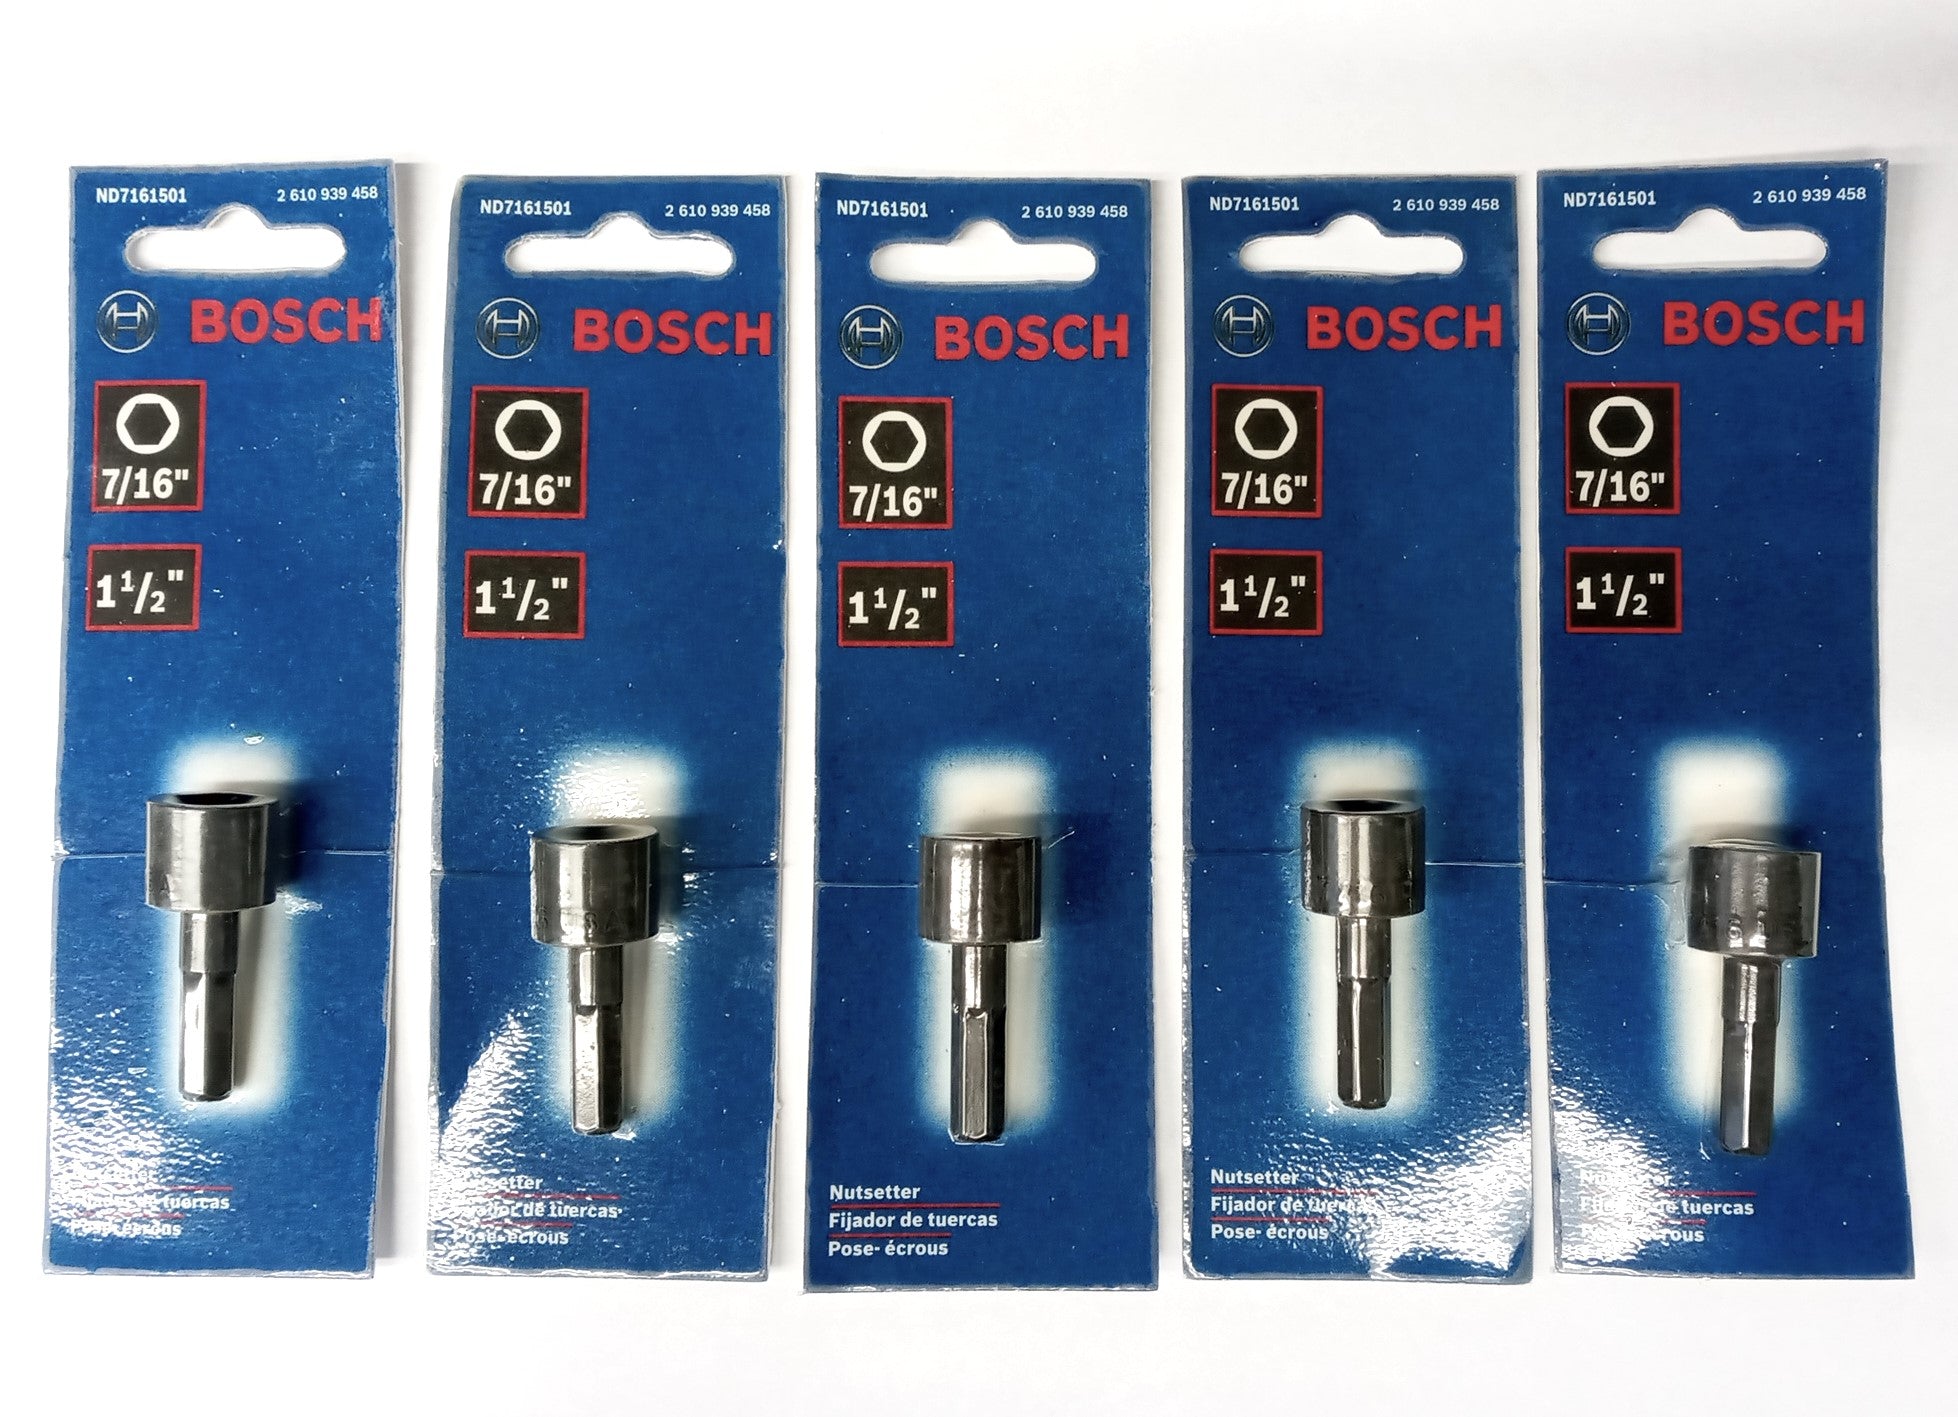 Bosch ND7161501 7/16" x 1-1/2" Nutsetter USA 5pcs.